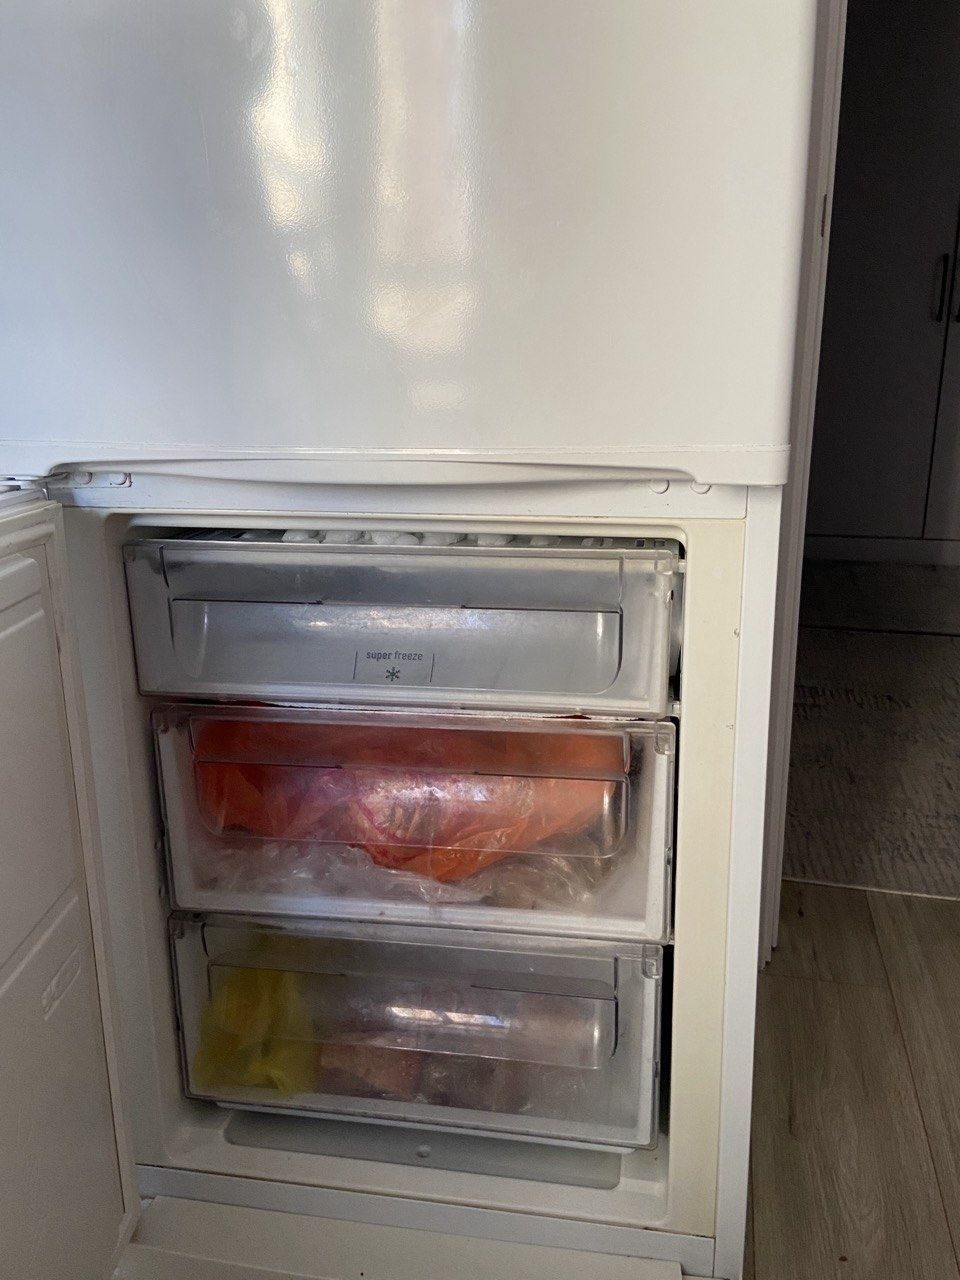 Продается Холодильник "INDESIT"